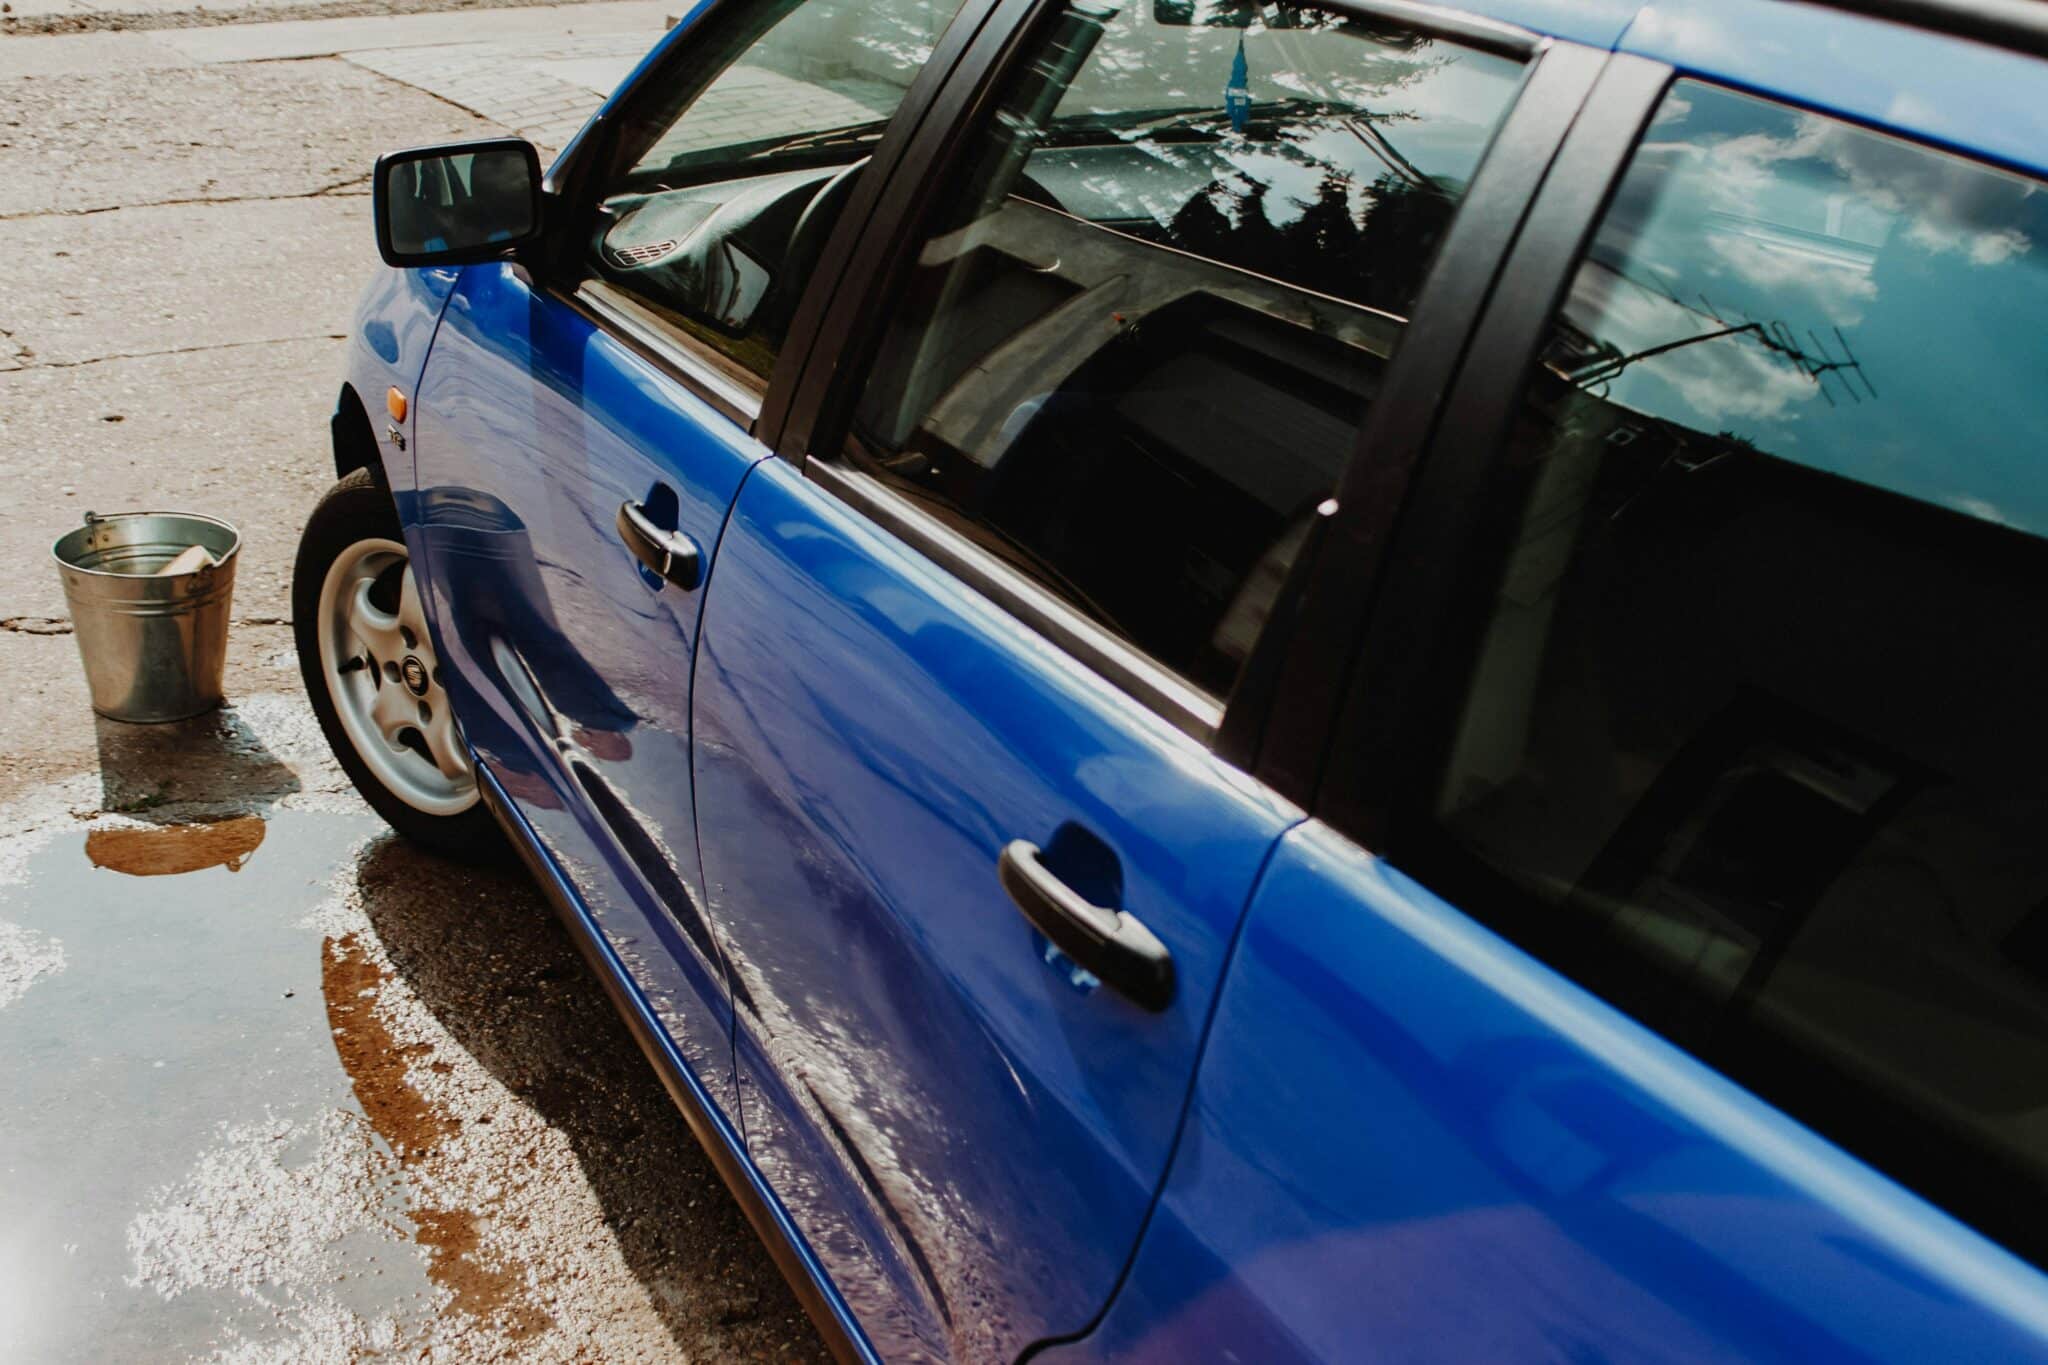 service de lavage de voiture professionnel pour un nettoyage impeccable et une brillance éclatante. découvrez notre expertise en lavage auto pour une voiture éclatante de propreté.